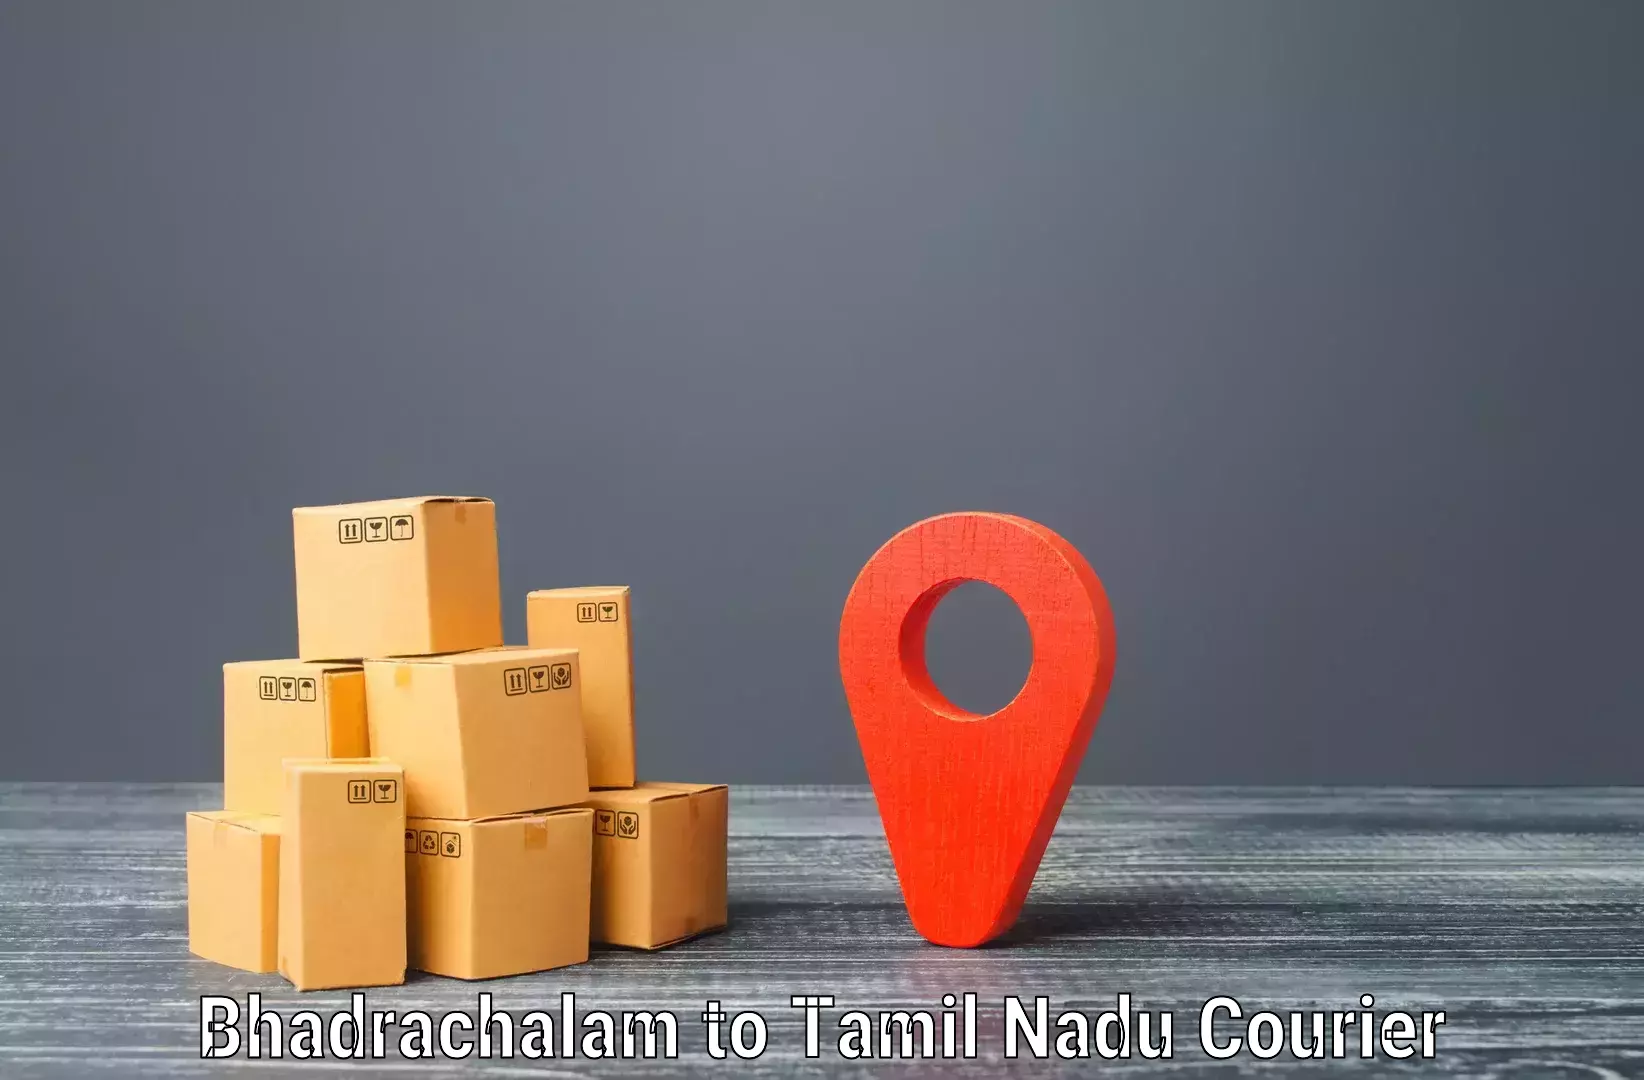 Express delivery capabilities Bhadrachalam to Tiruchengodu